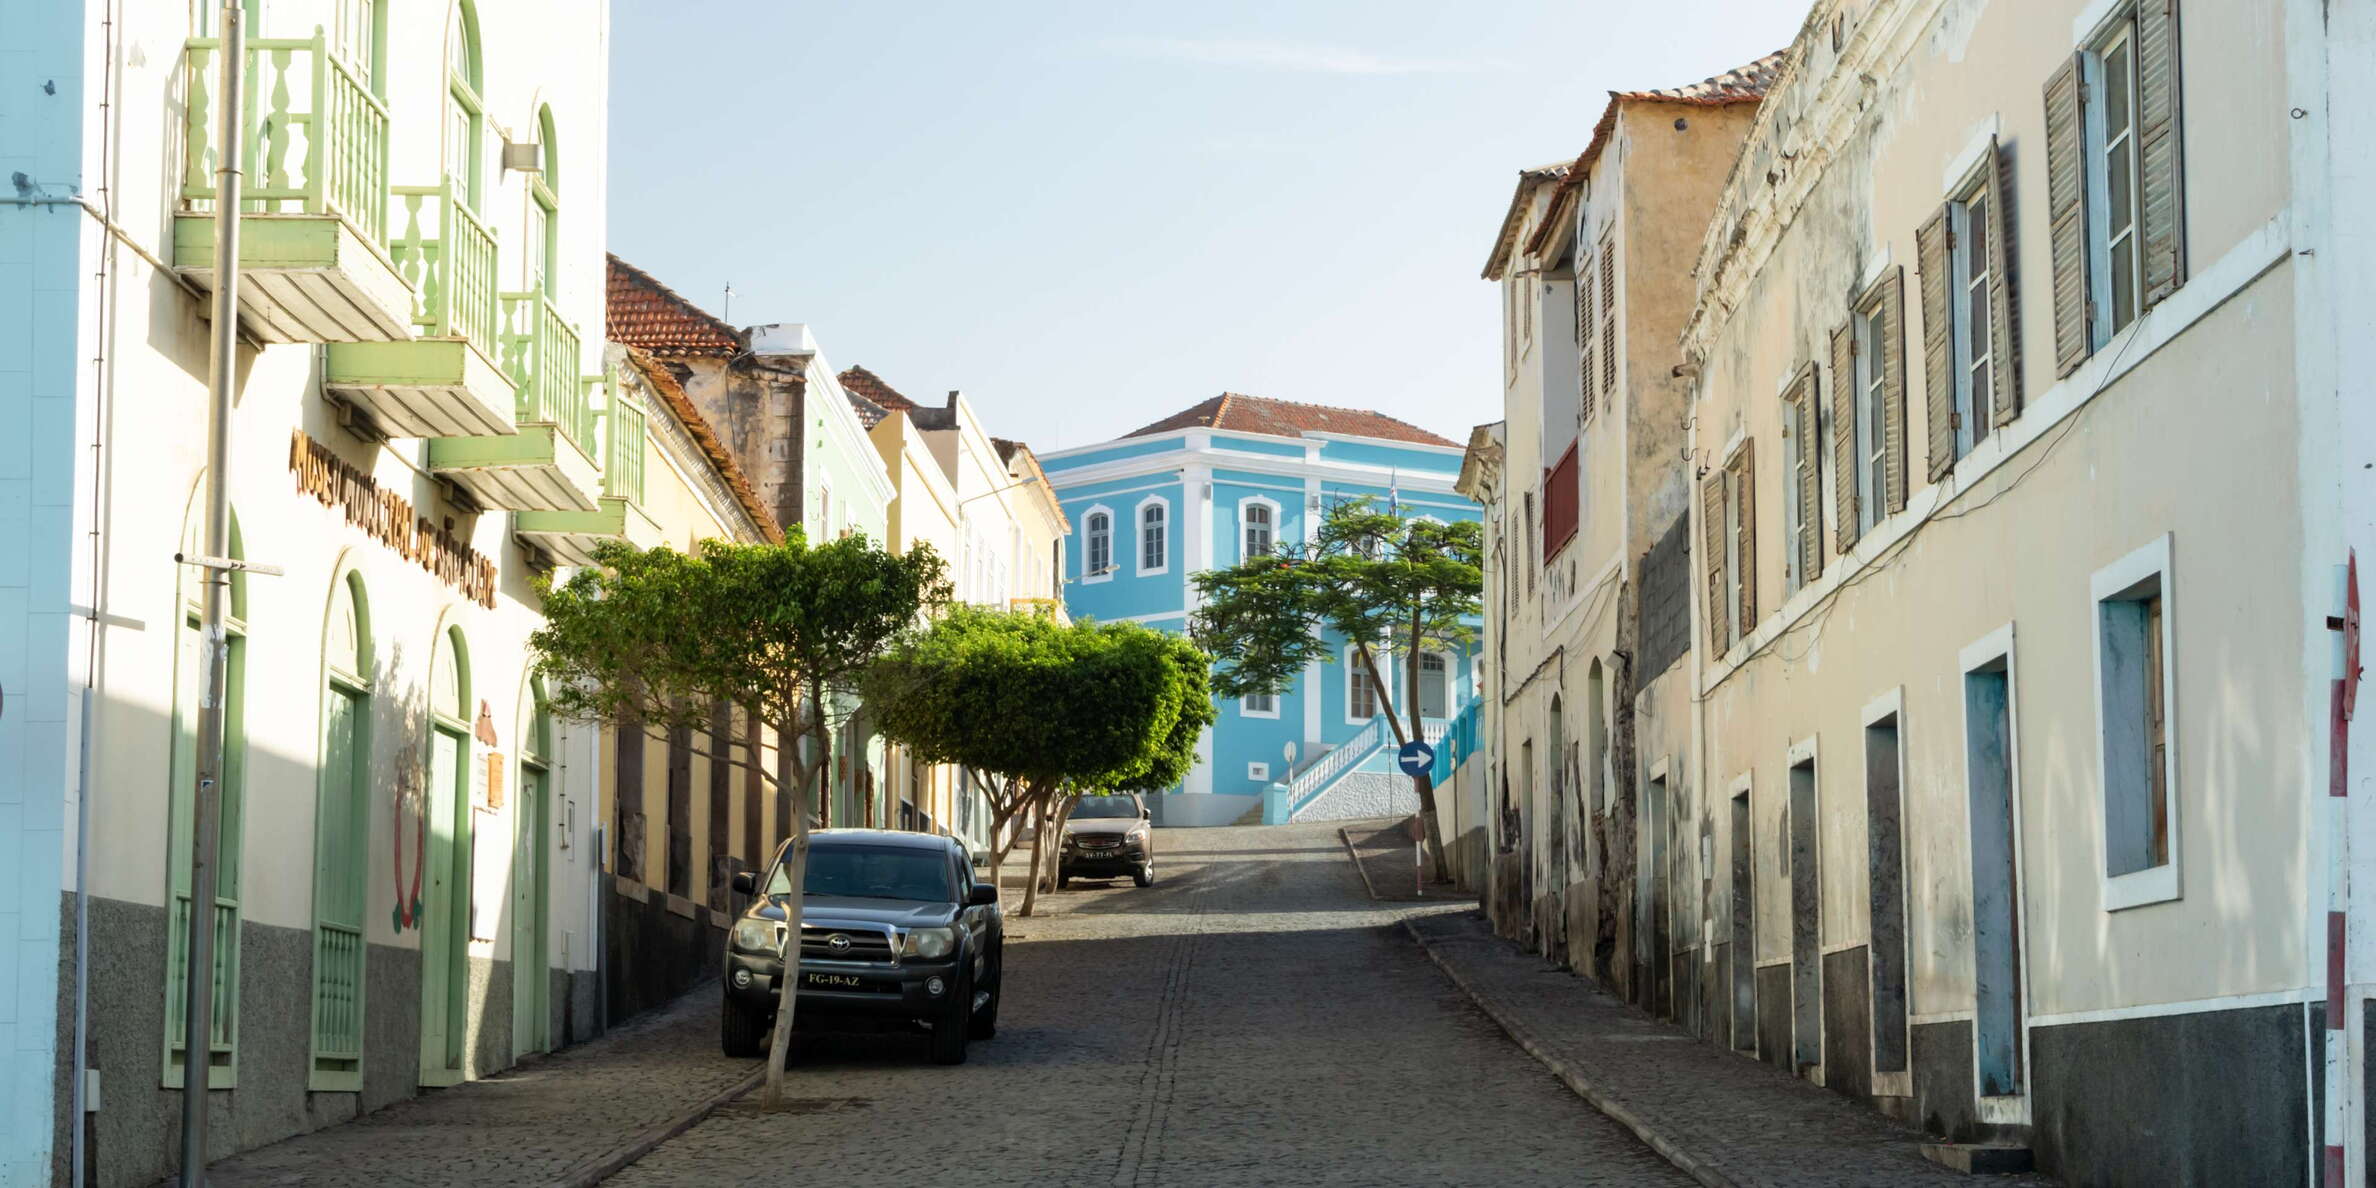 Fogo | Historic centre of São Filipe